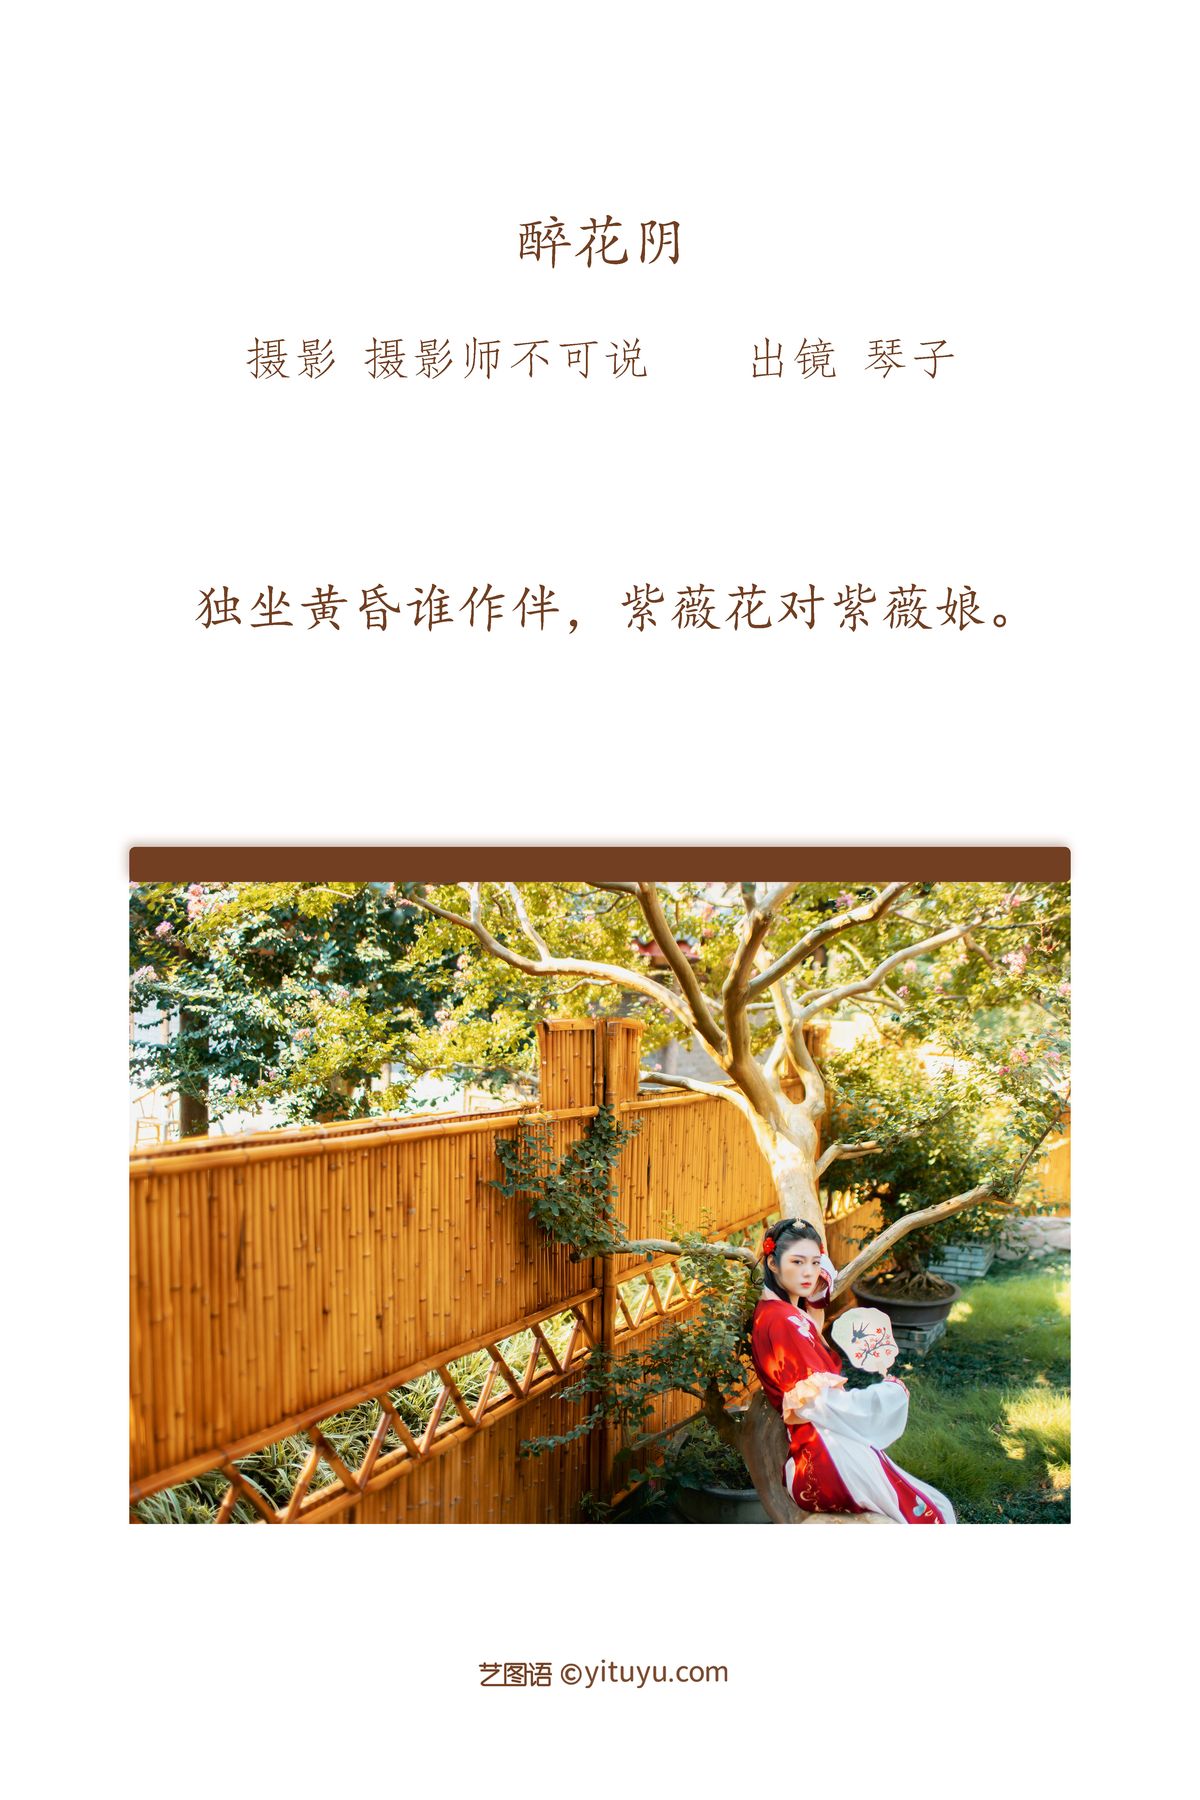 YiTuYu艺图语 Vol 2544 Qin Ko 0001 9586915633.jpg